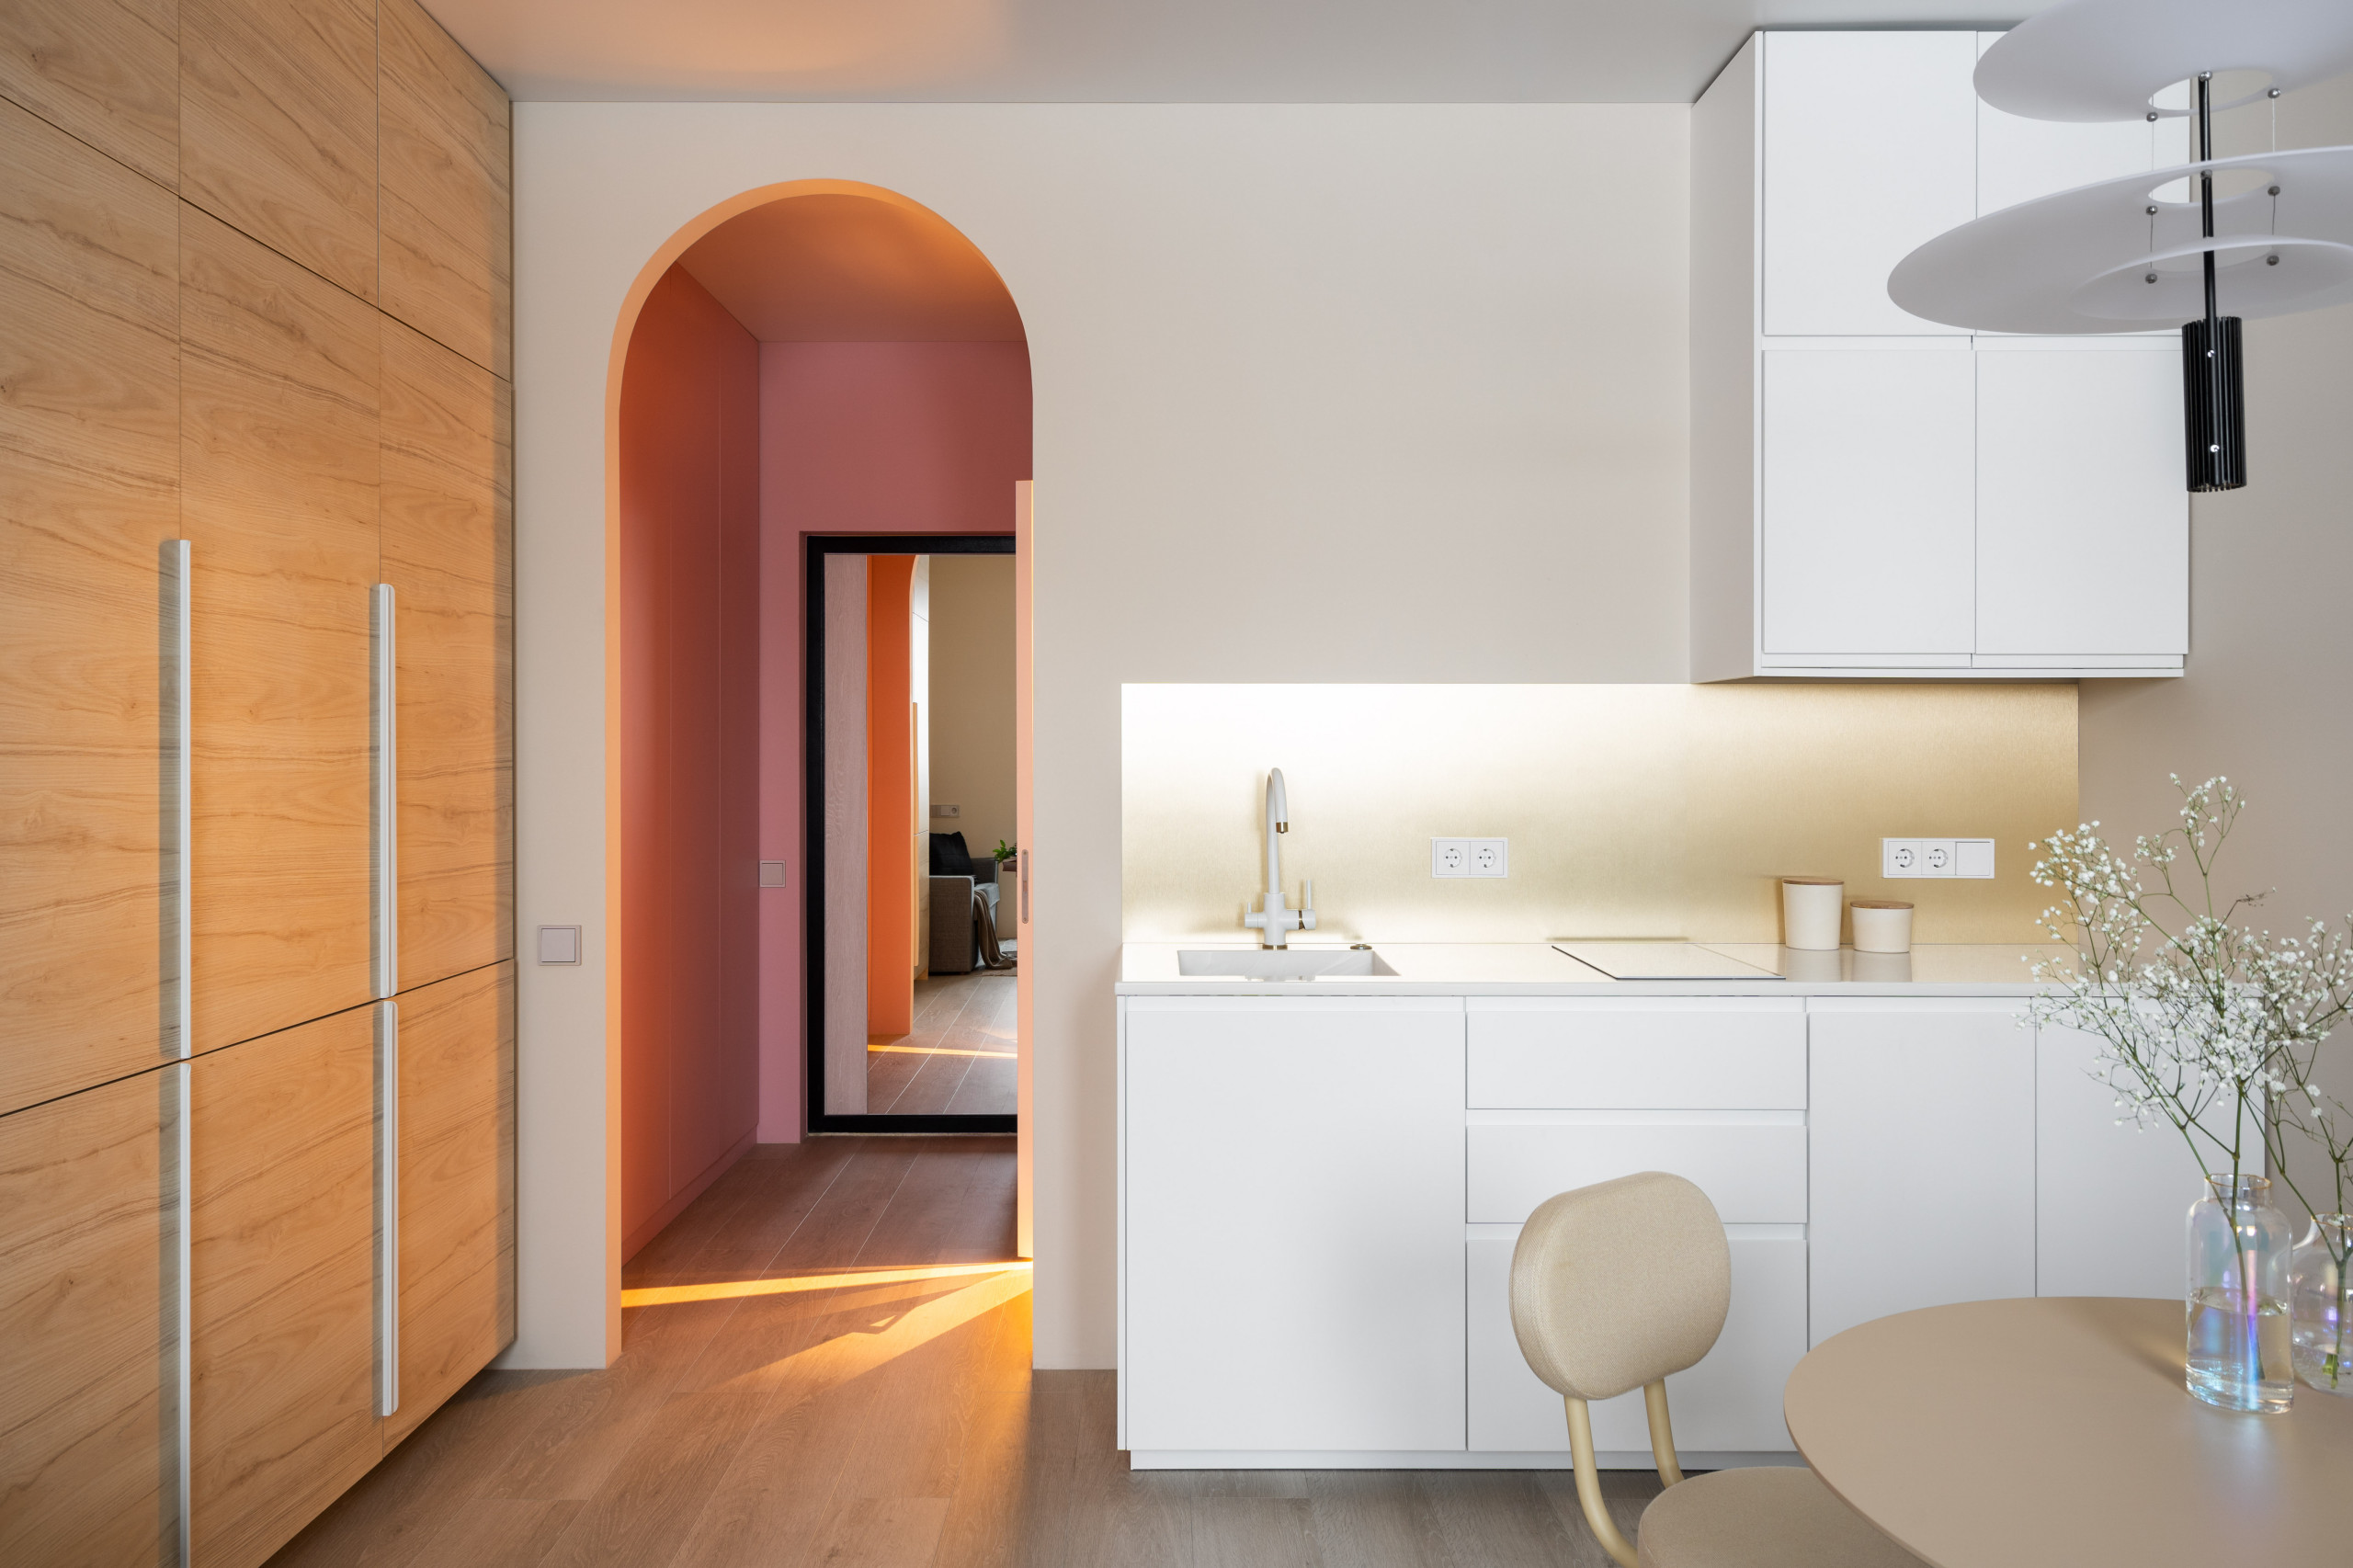 24 кв.м — студия с розовой прихожей и видом на Неву идеи для дома,интерьер и дизайн